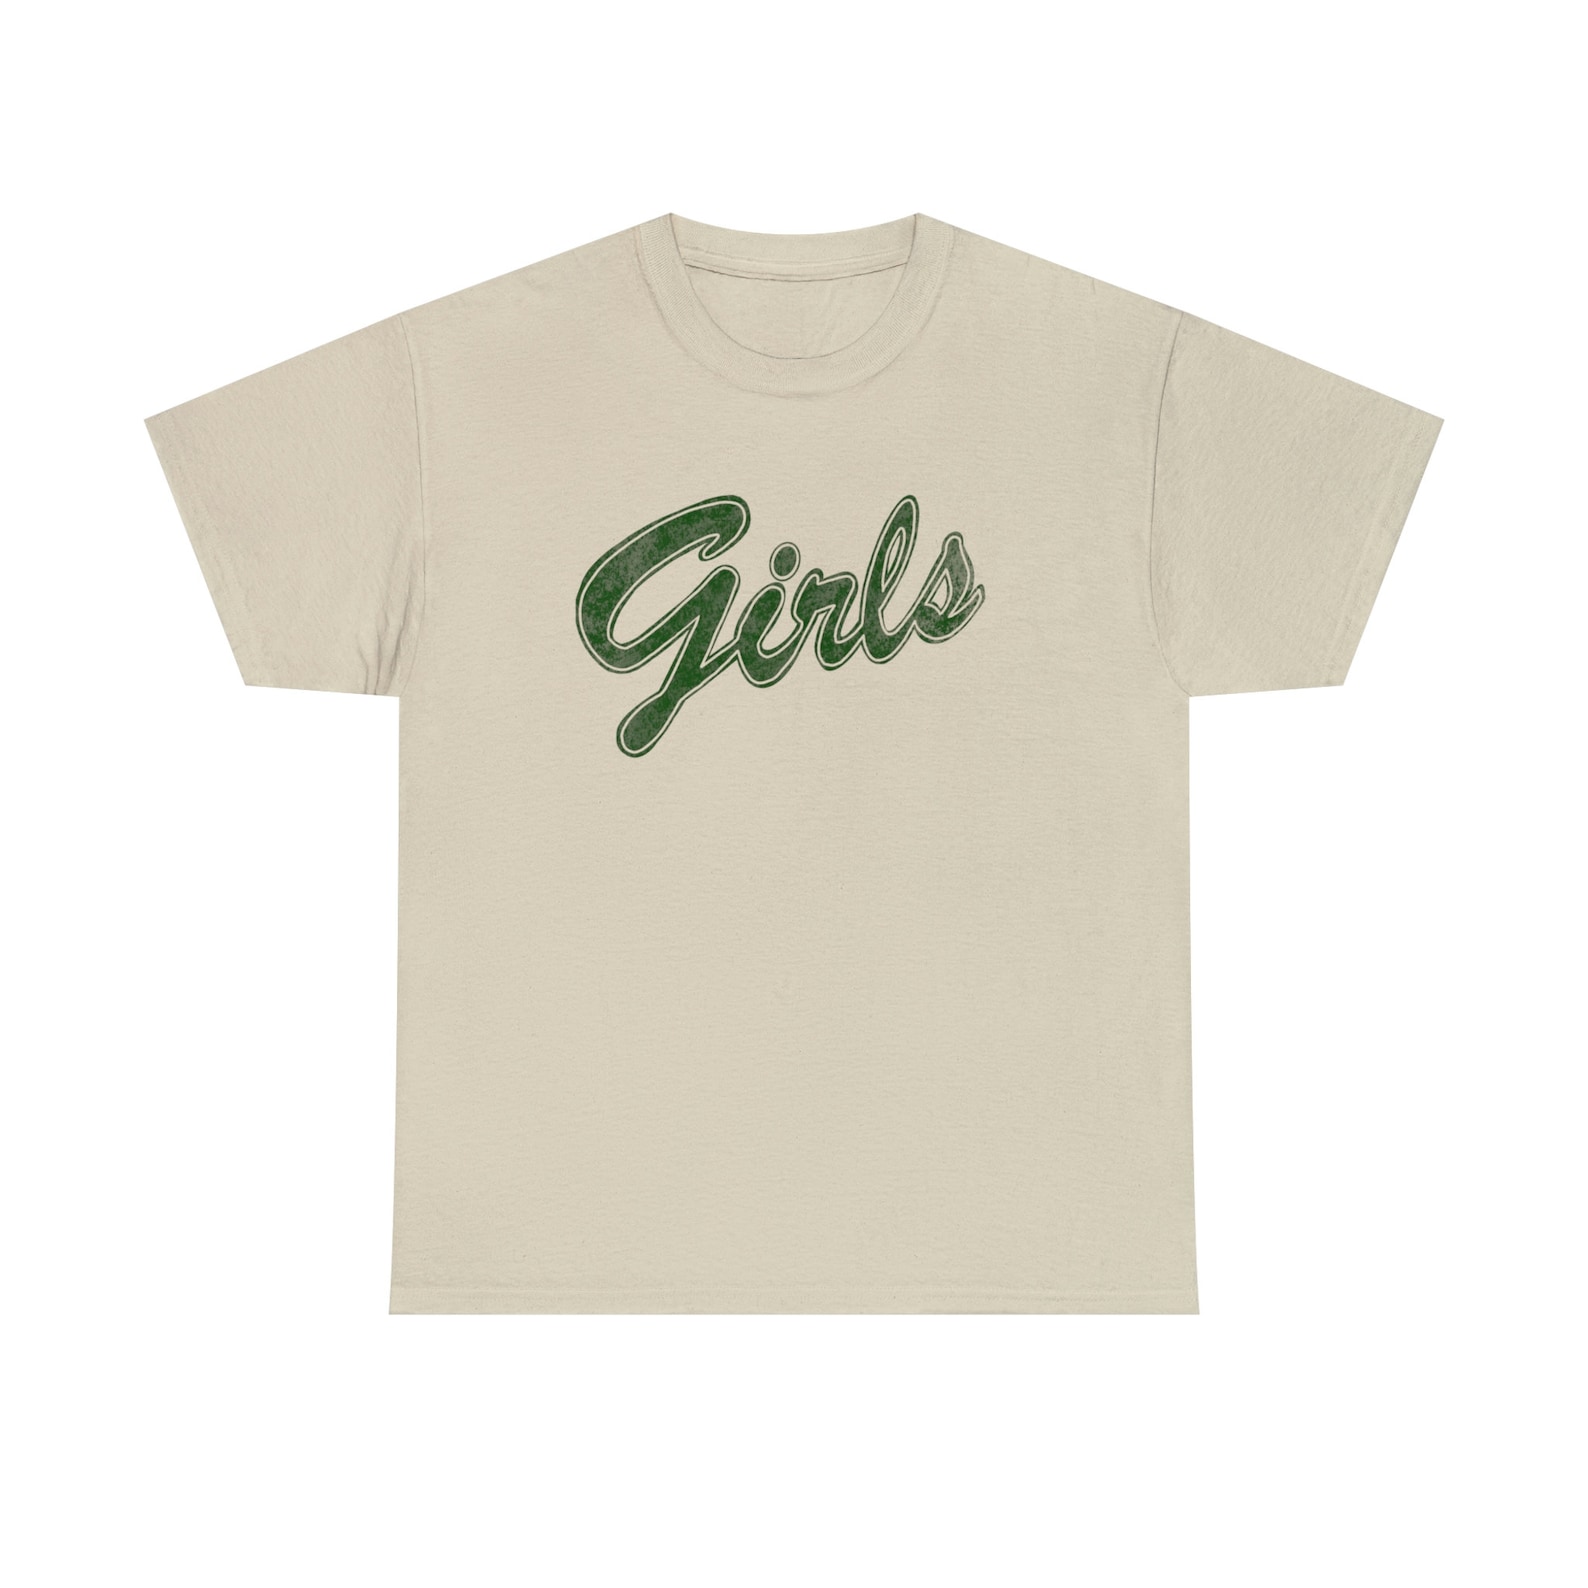 Girls Tee Shirt, Rachel Green Tee Shirt, Friends Tee - Etsy